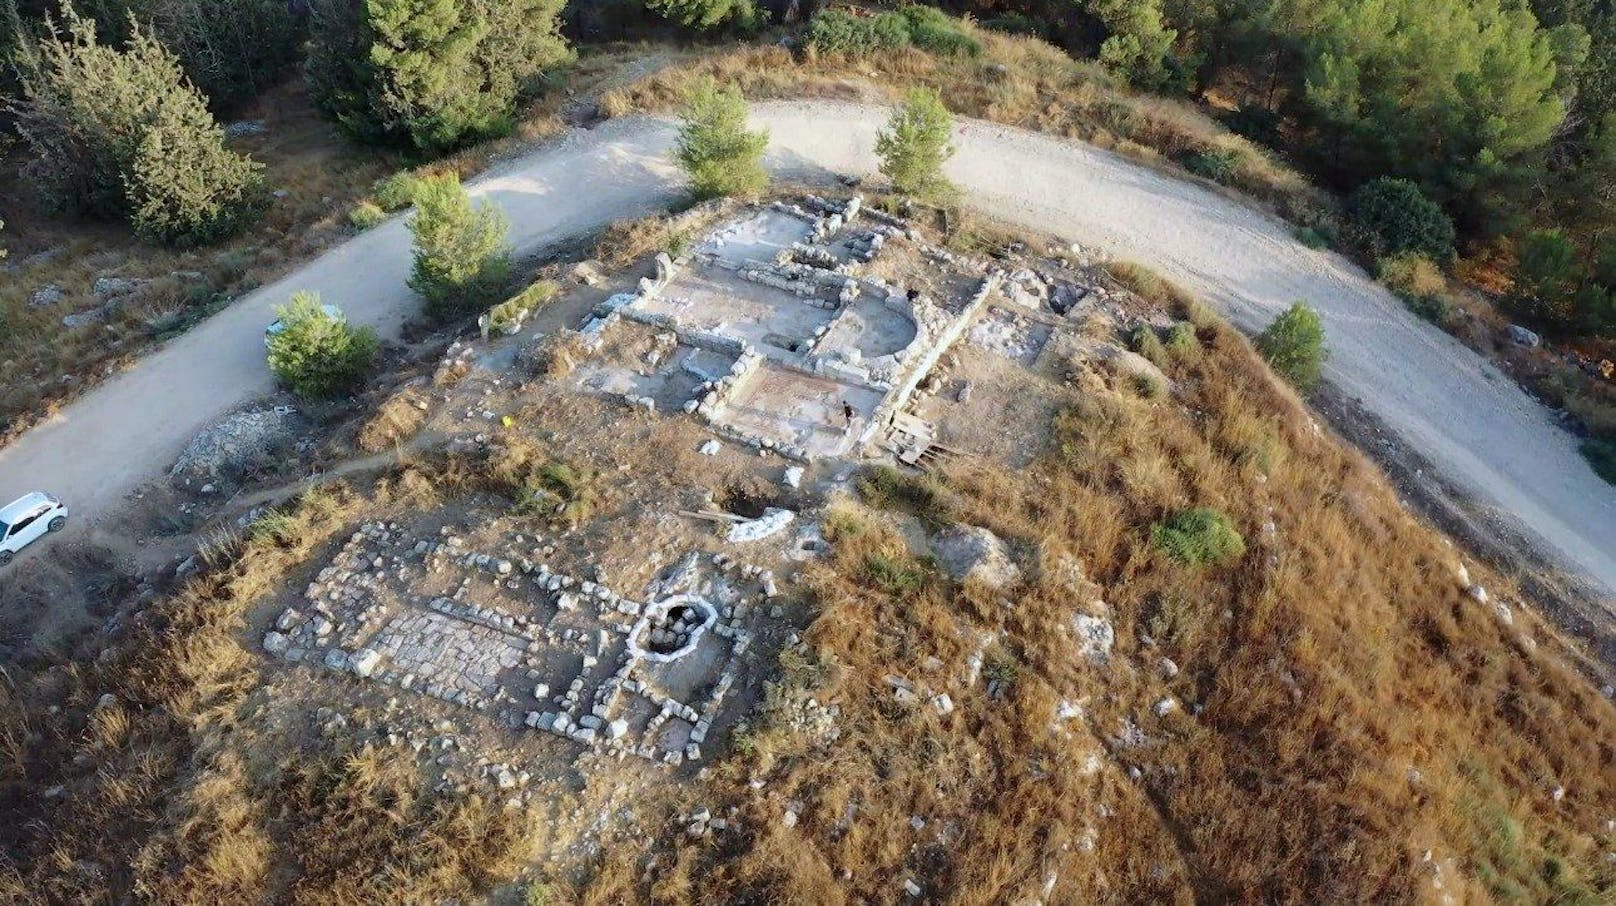 Israelische Soldaten haben bei einer Militärübung einen 1.500 Jahre alten Klosterkomplex wiederentdeckt. Das Frauenkloster wurde erstmals vor 20 Jahren von der israelischen Altertumsbehörde ausgegraben und anschließend wieder begraben, um es zu schützen.